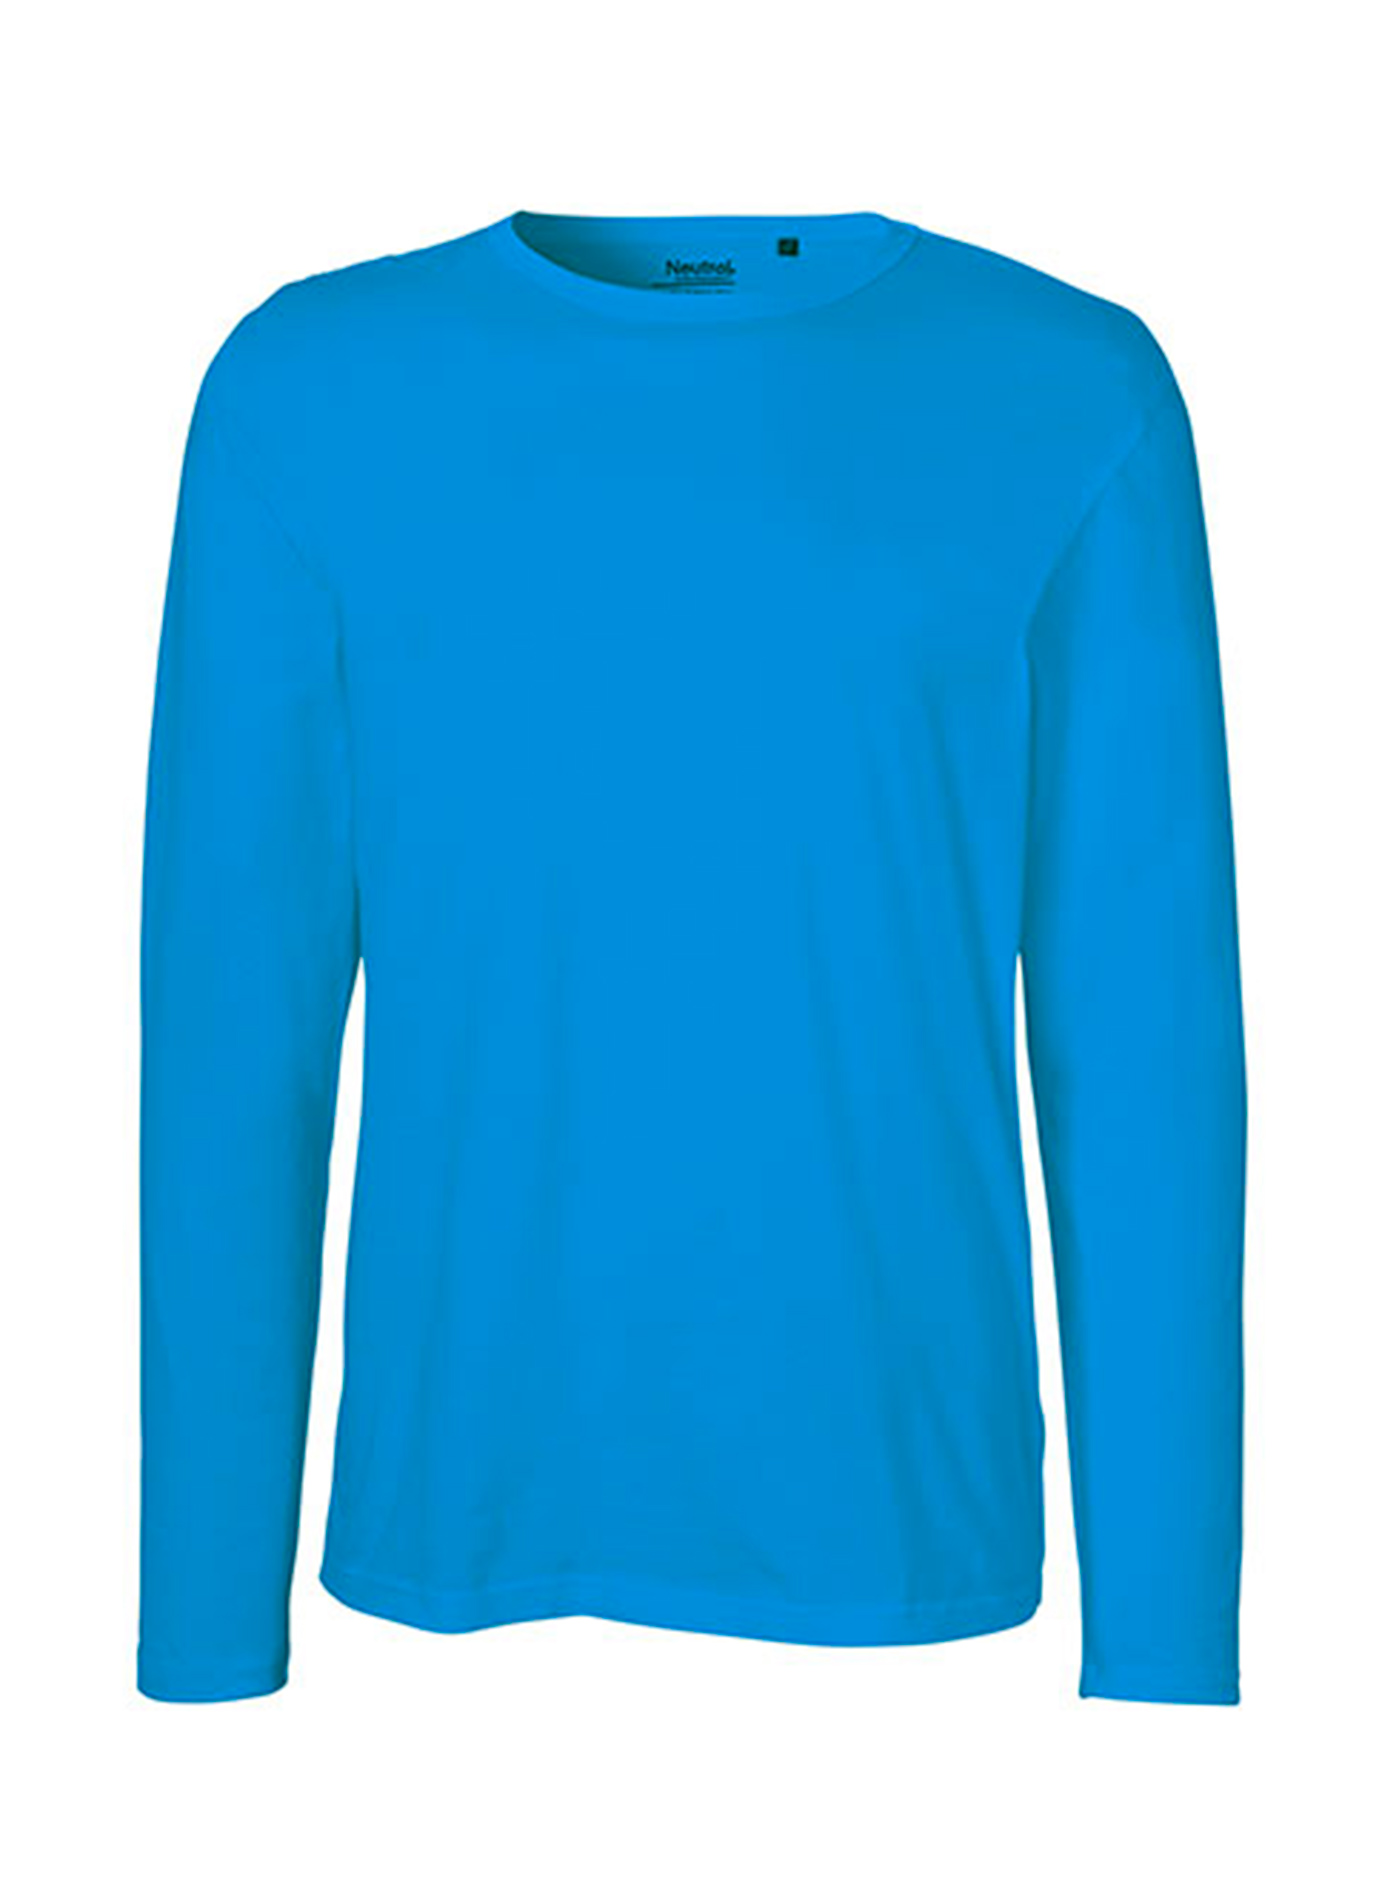 Pánské tričko s dlouhým rukávem Neutral - Safírově modrá M